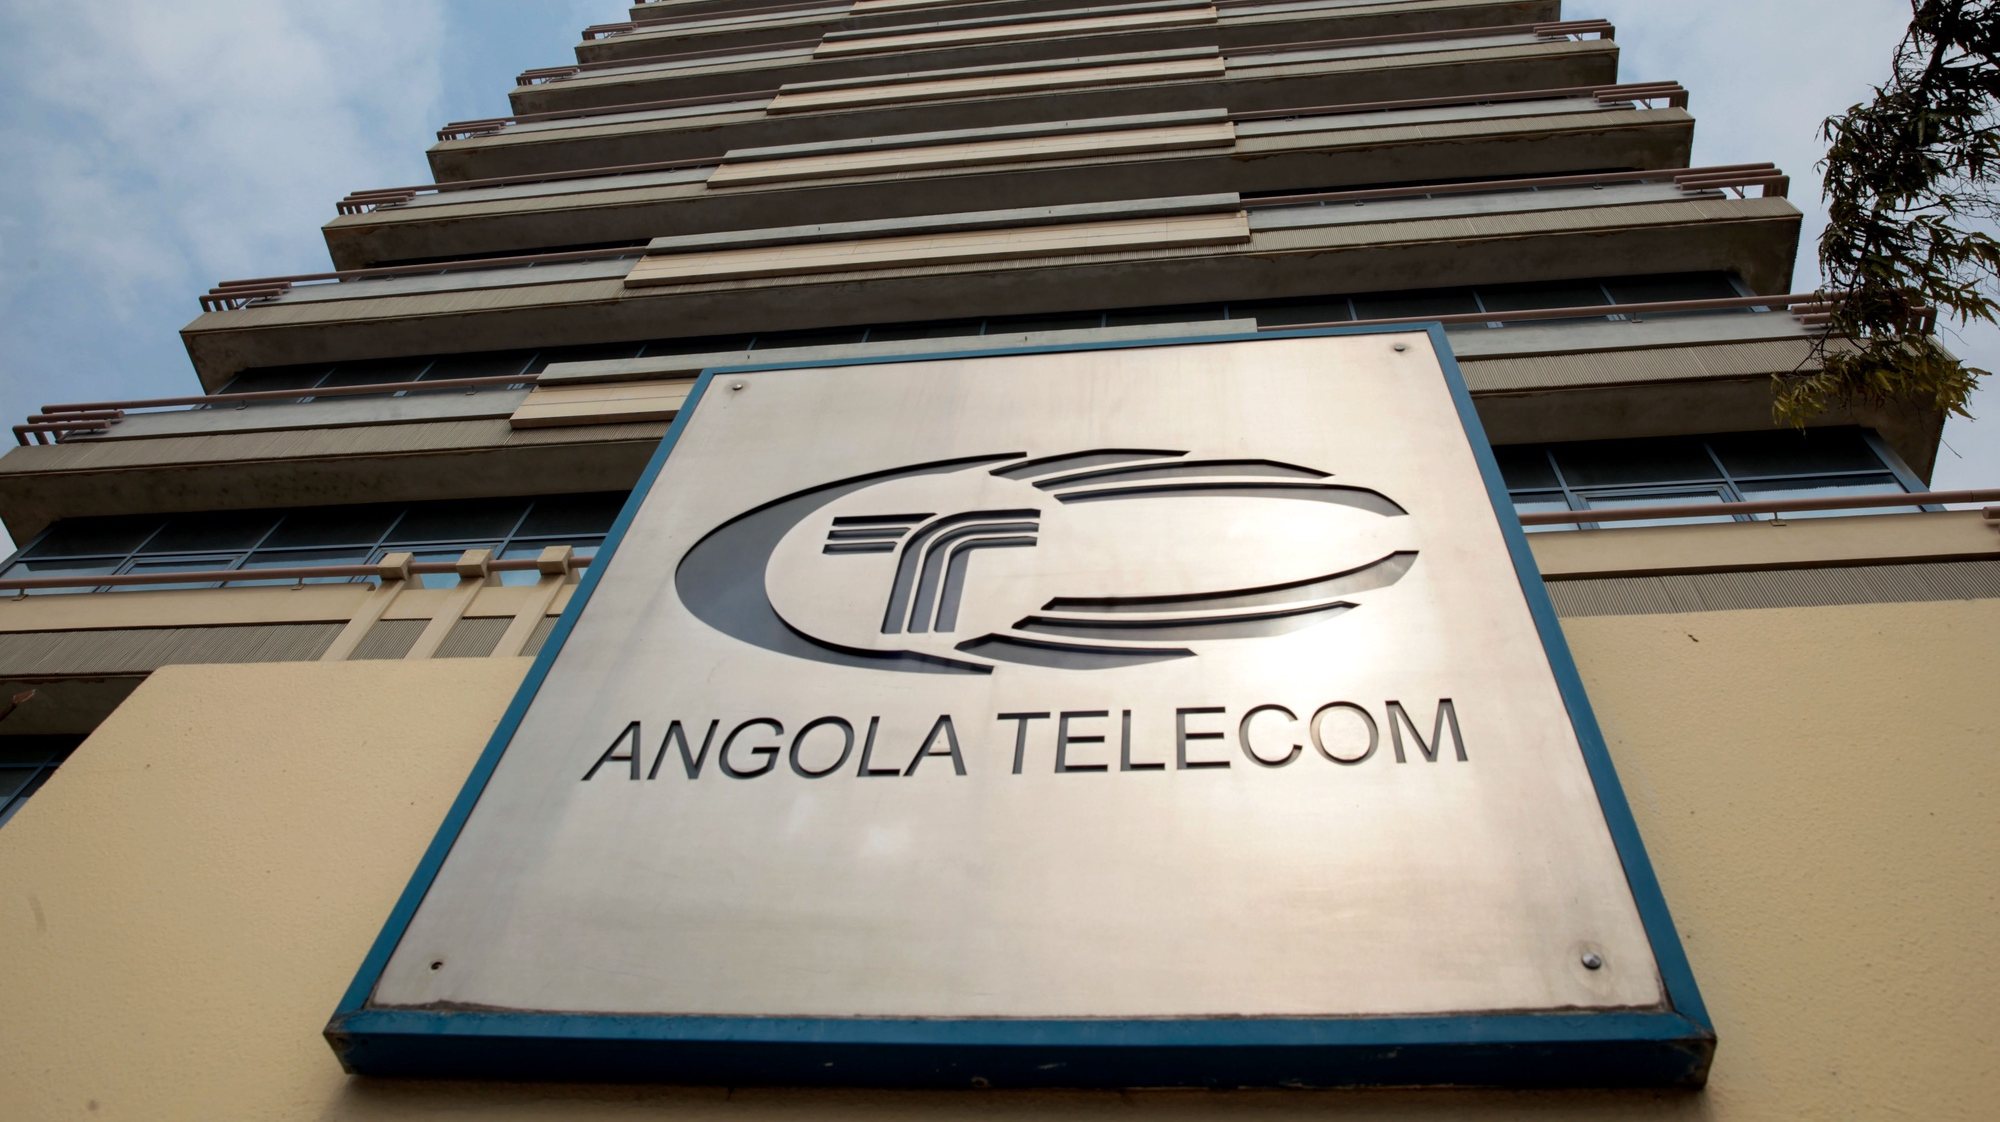 Sede da AngolaTelecom em Luanda, Angola, 28 de julho de 2020. AMPE ROGÉRIO/LUSA